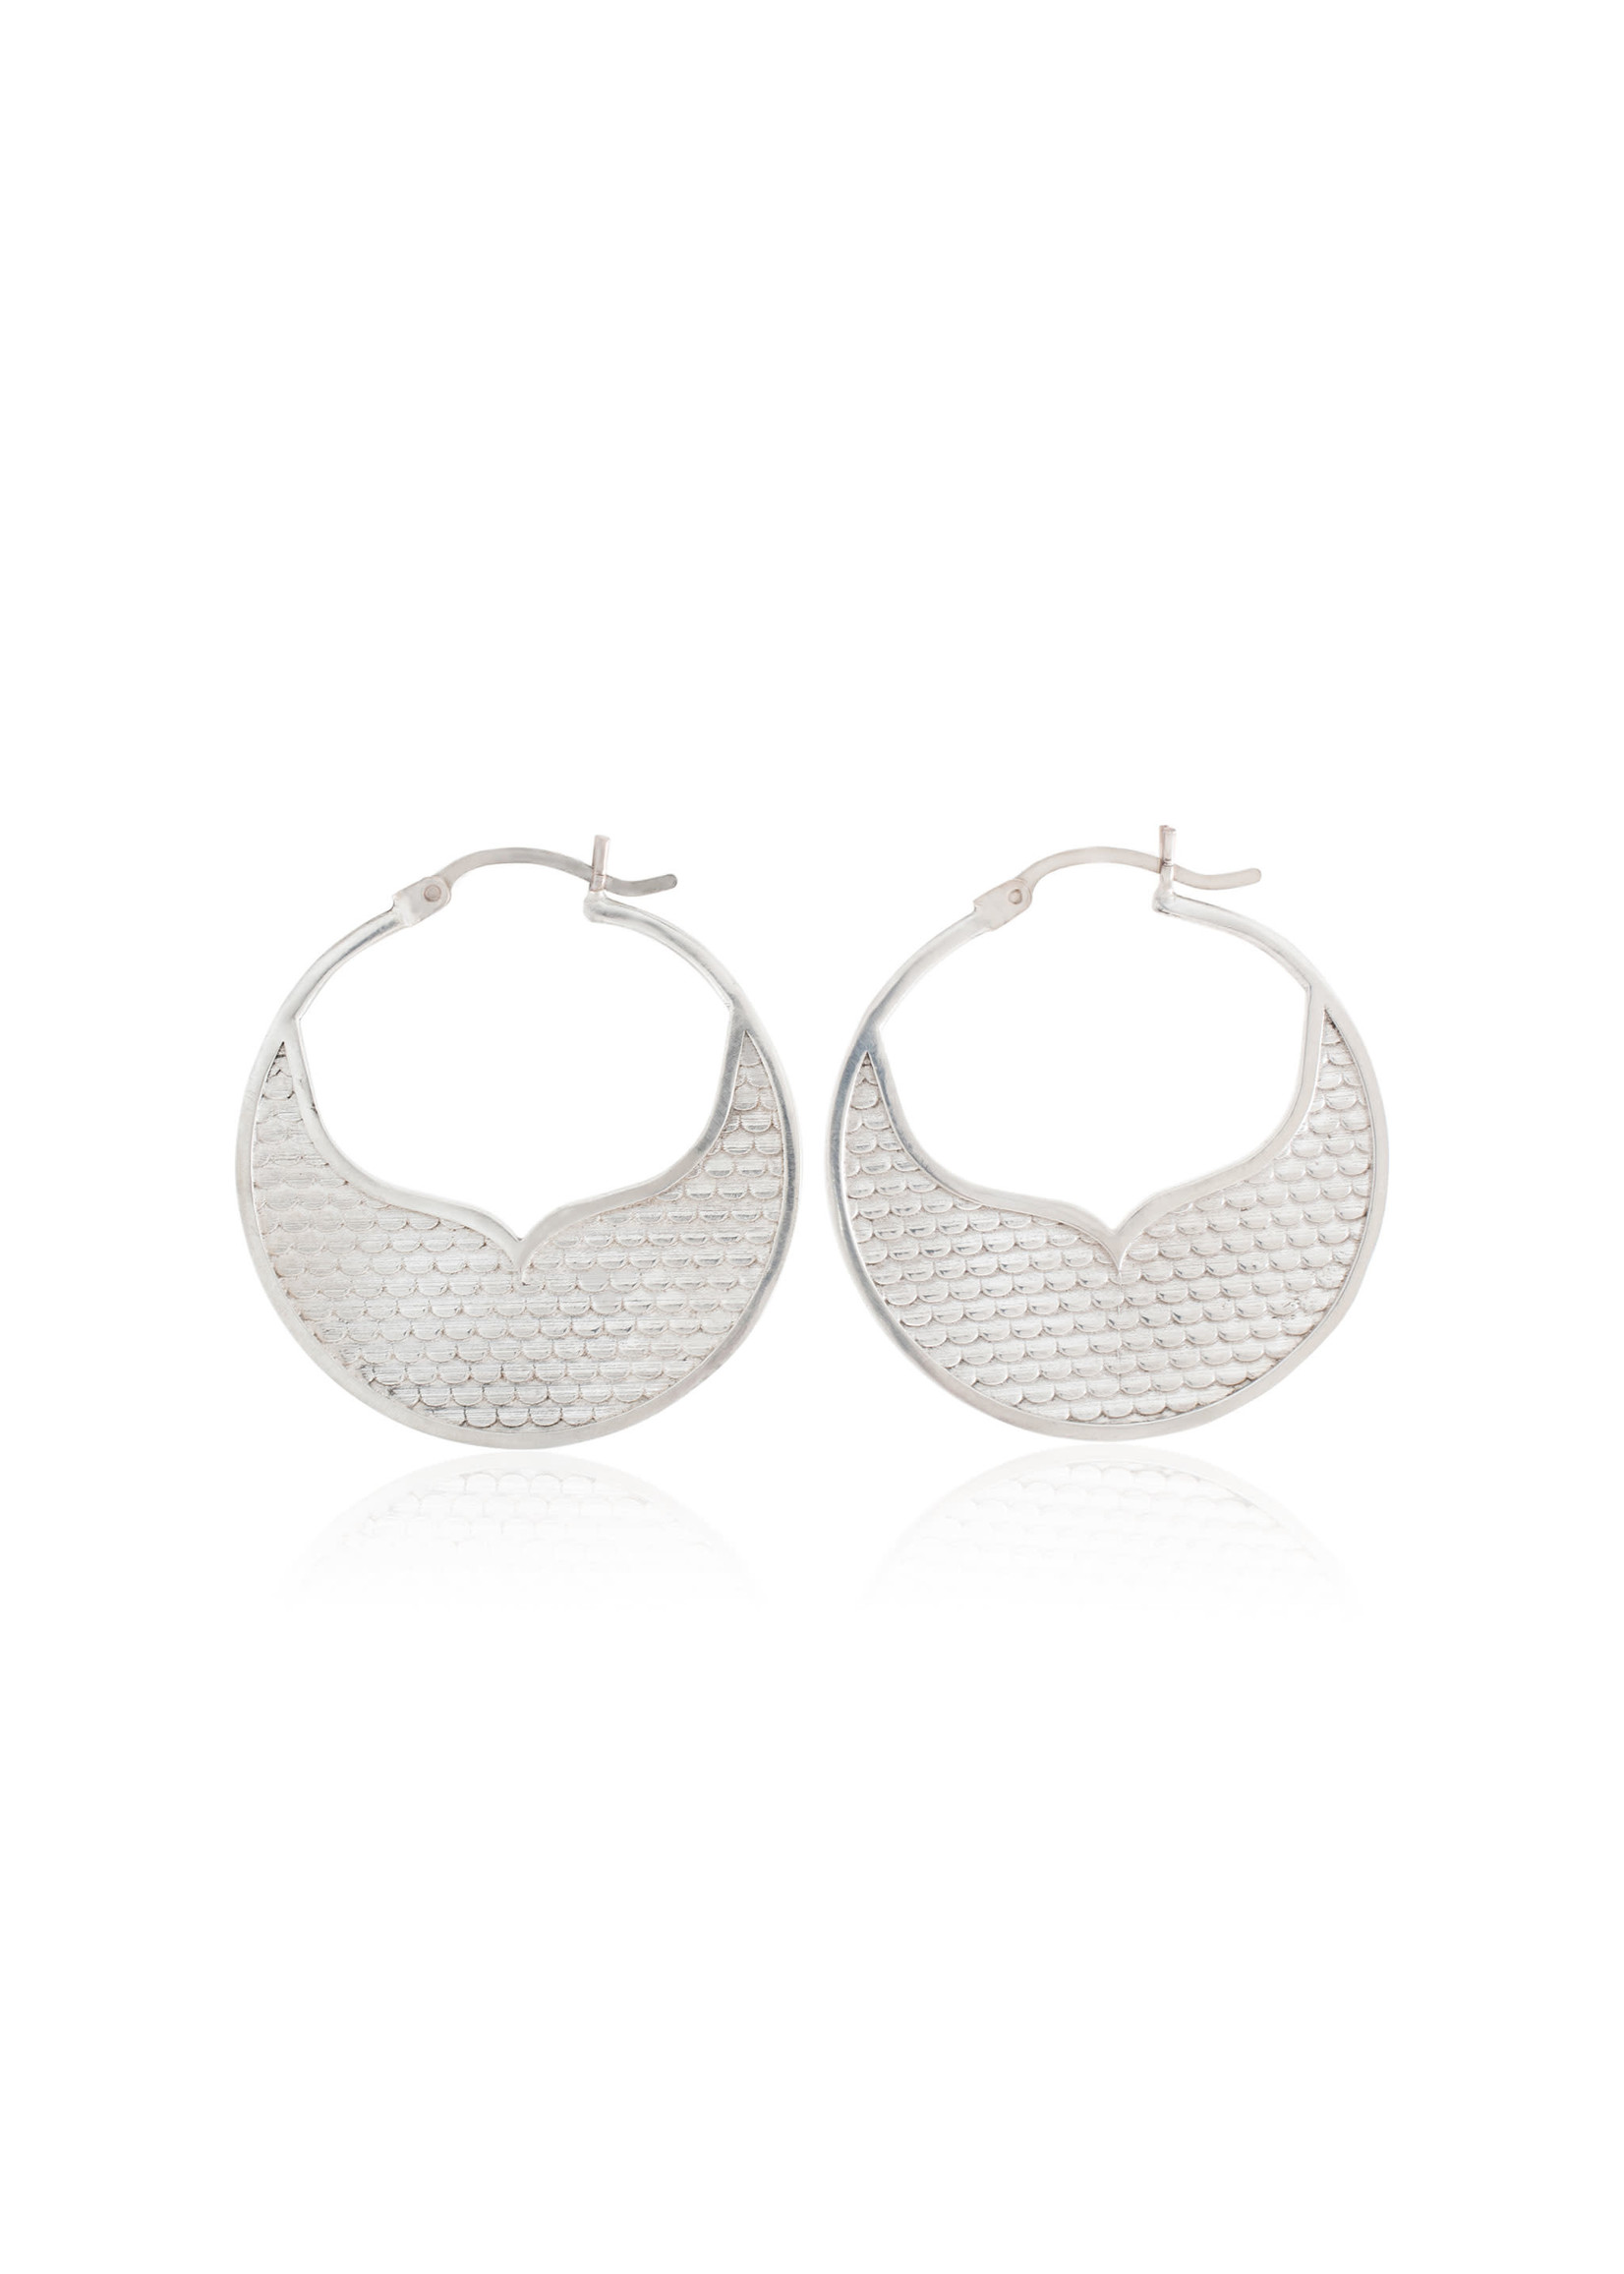 Michaela Farkasovska Designs Mermaid Tail Hoop Earrings - Large, Silver